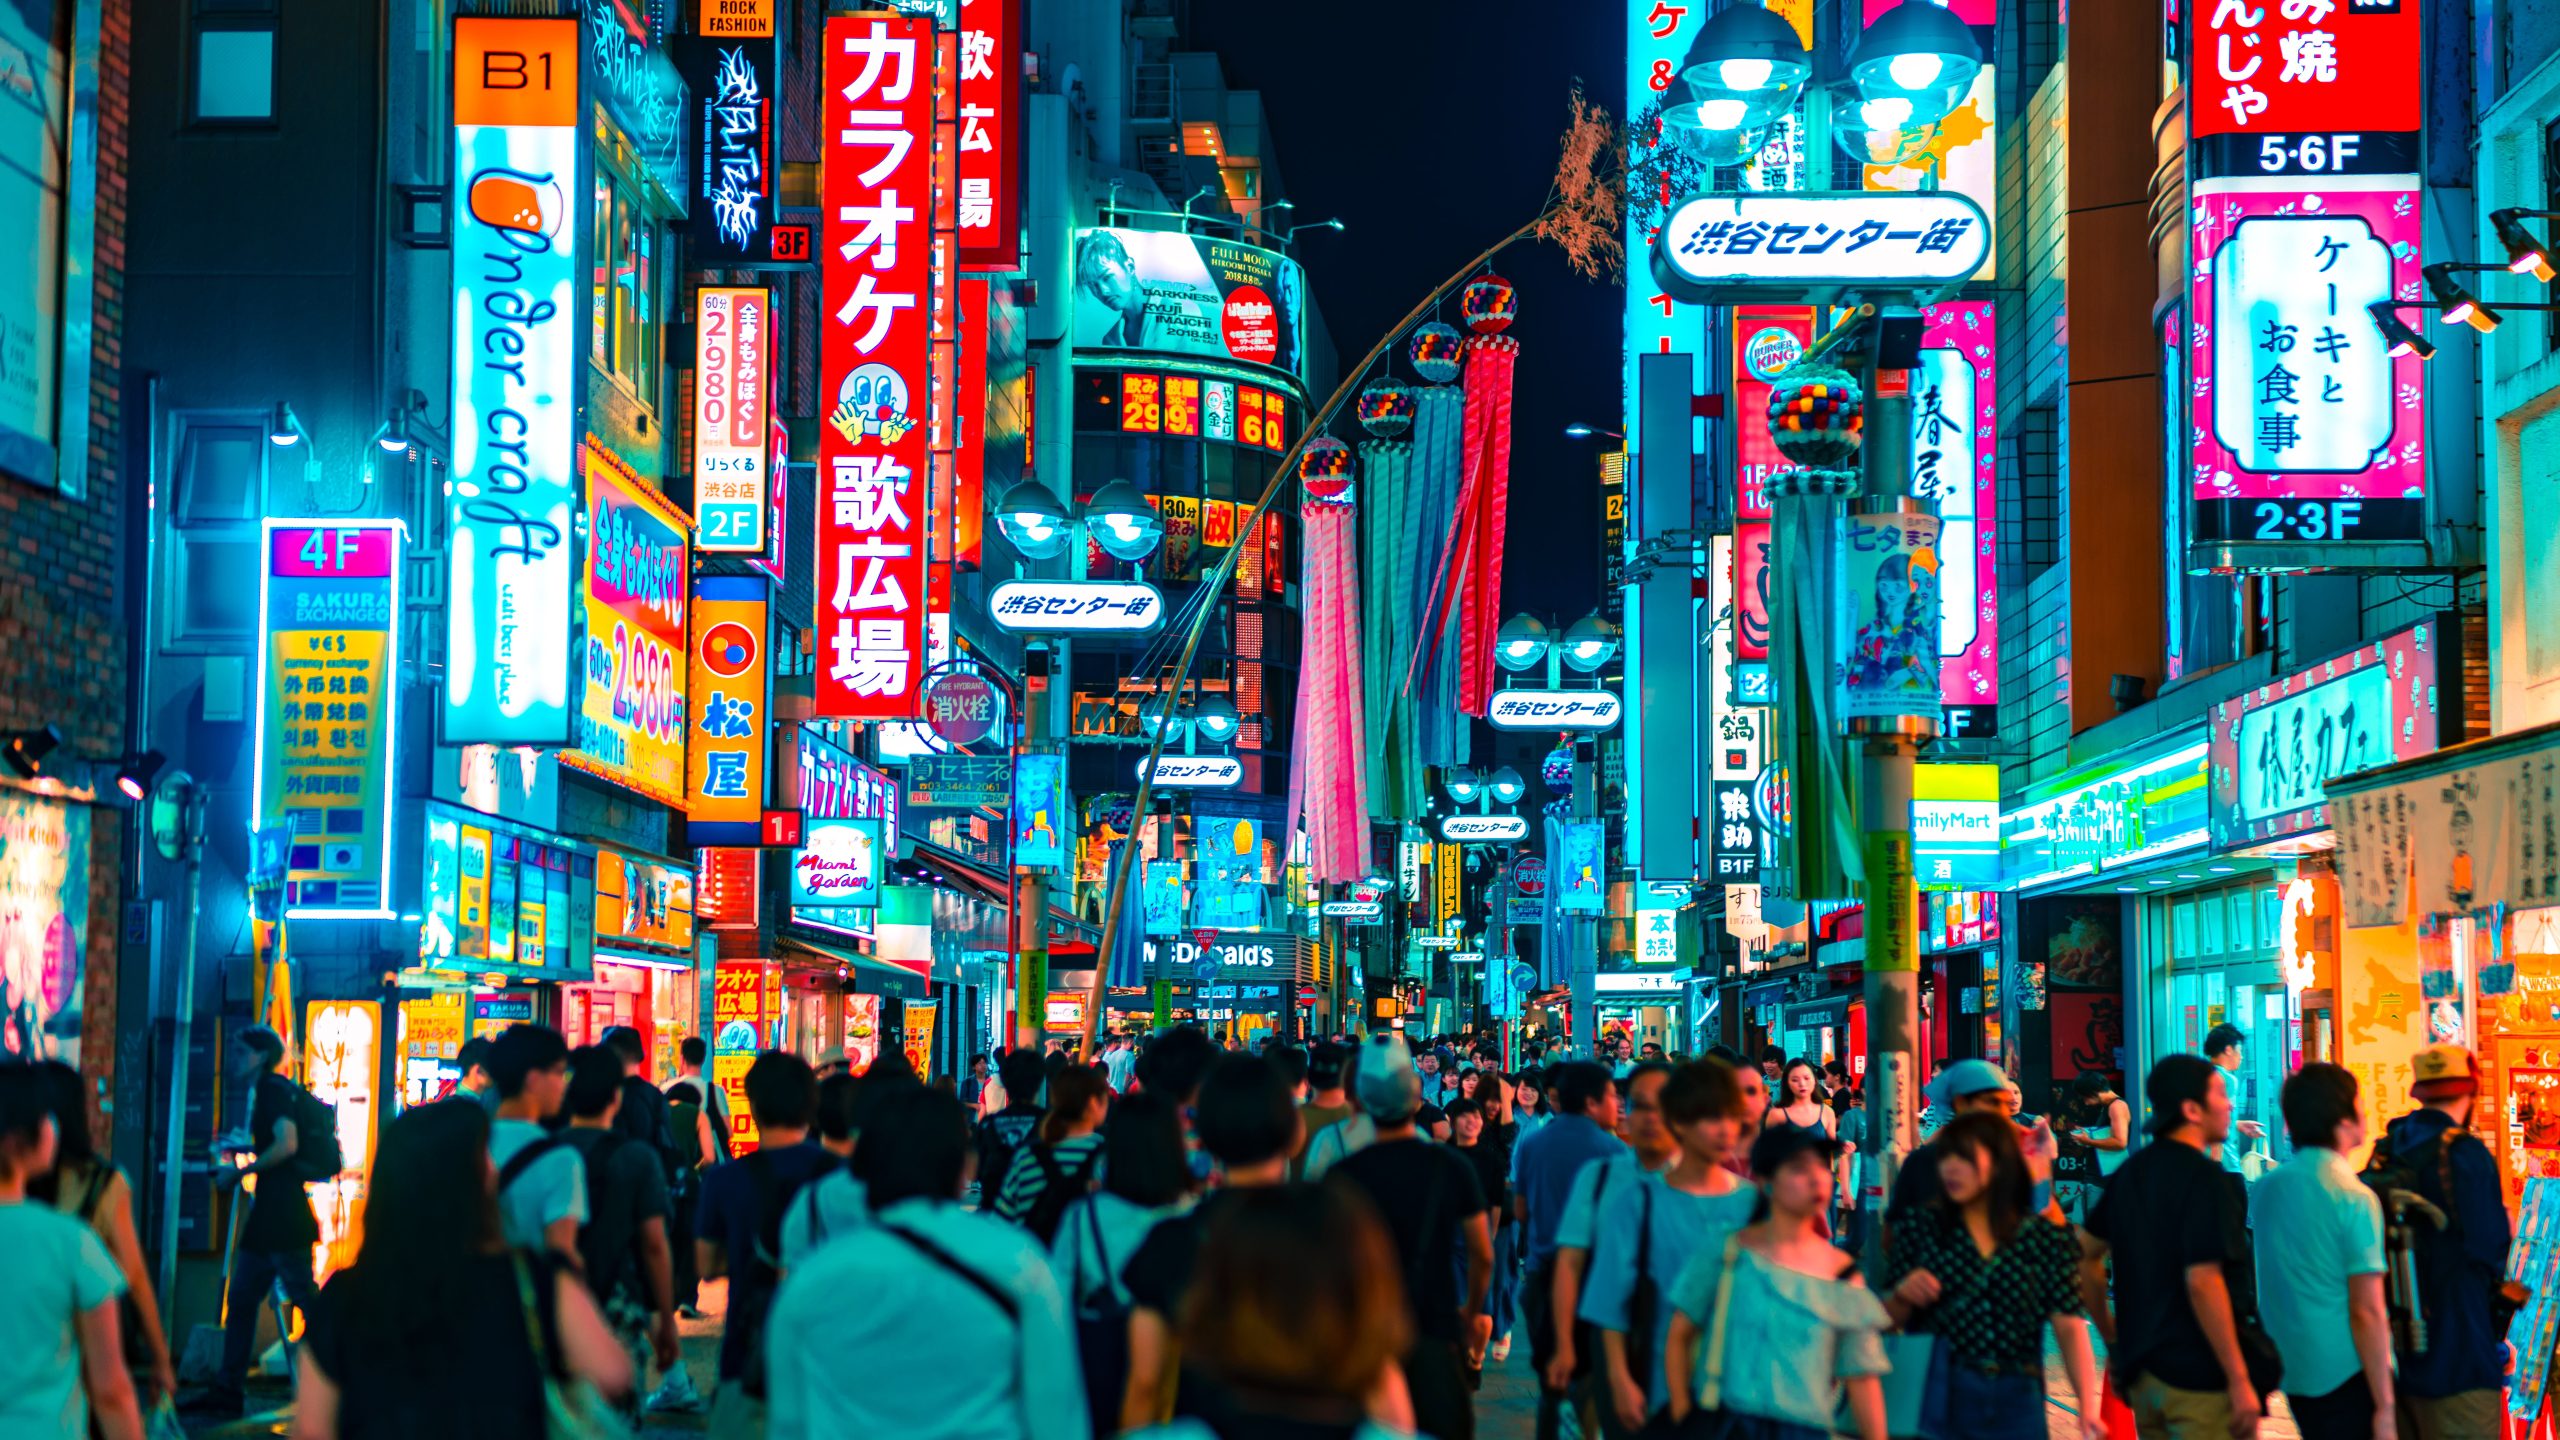 Neon cities in Japan